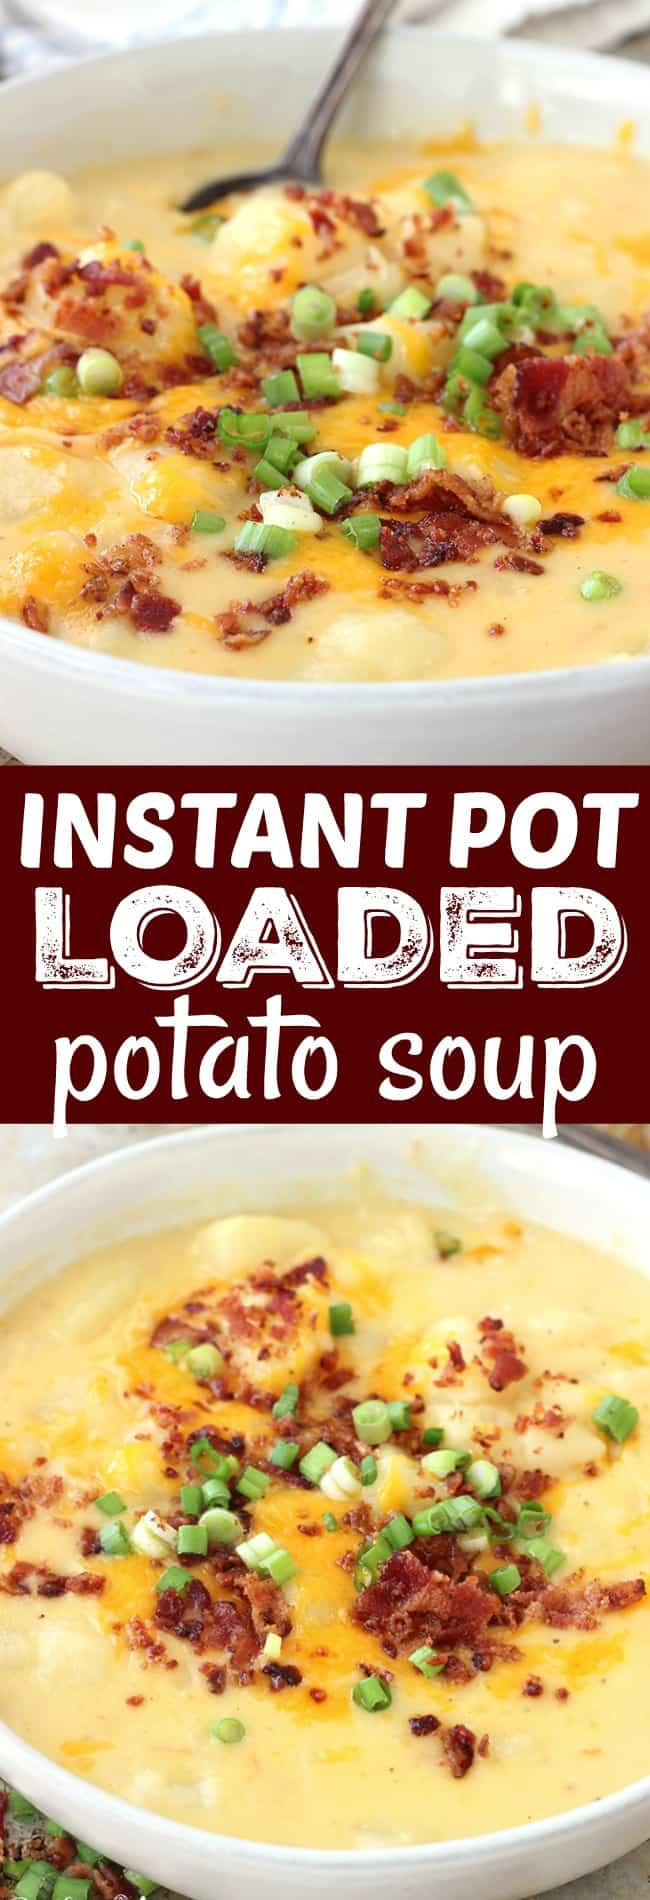 Instant Pot Low Fat Recipes
 Instant Pot Loaded Potato Soup Belle of the Kitchen